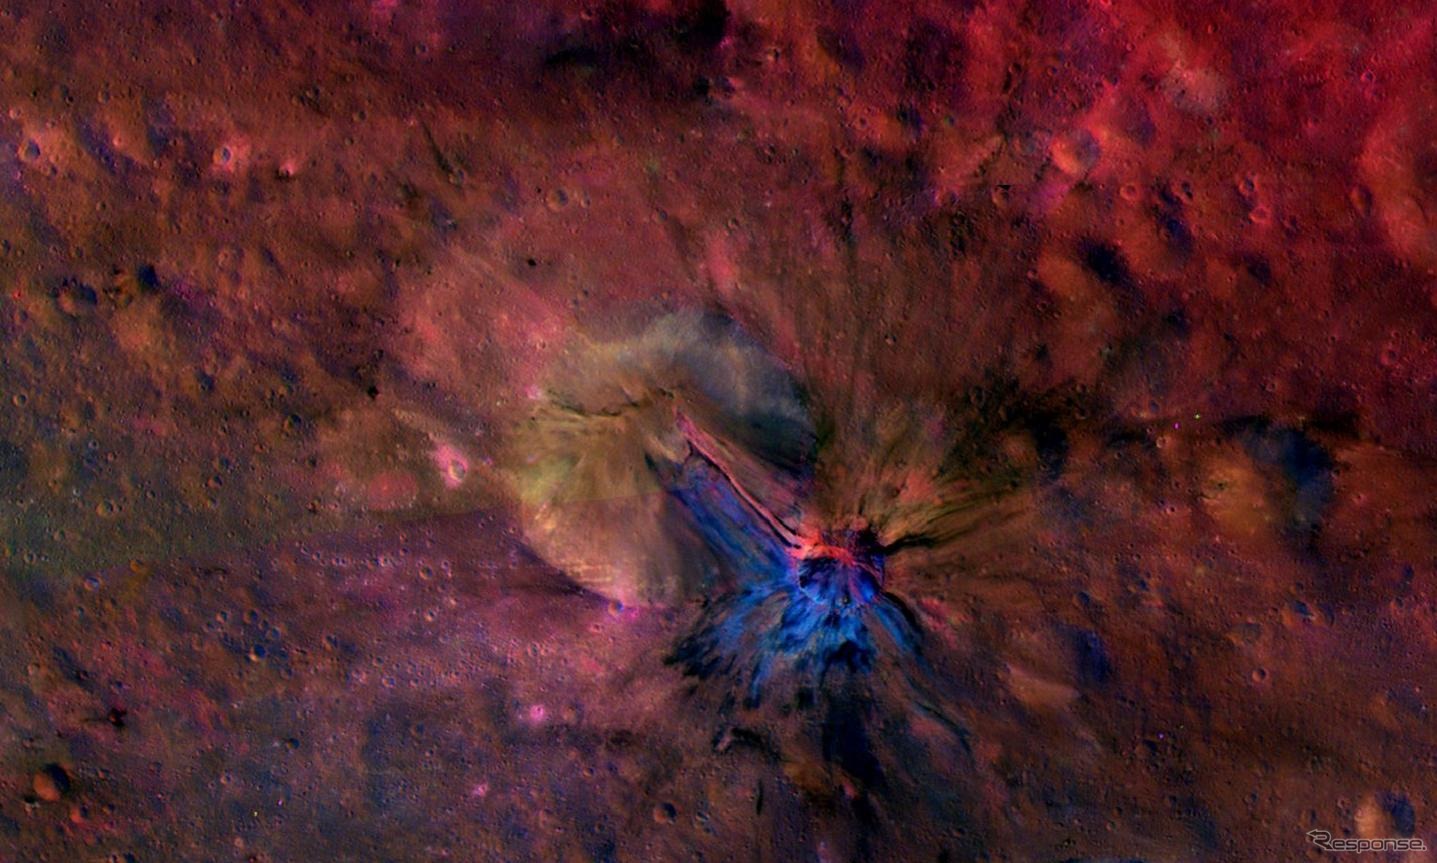 ドーン探査機が明らかにした小惑星ベスタ、アエリアクレーターのカラー画像